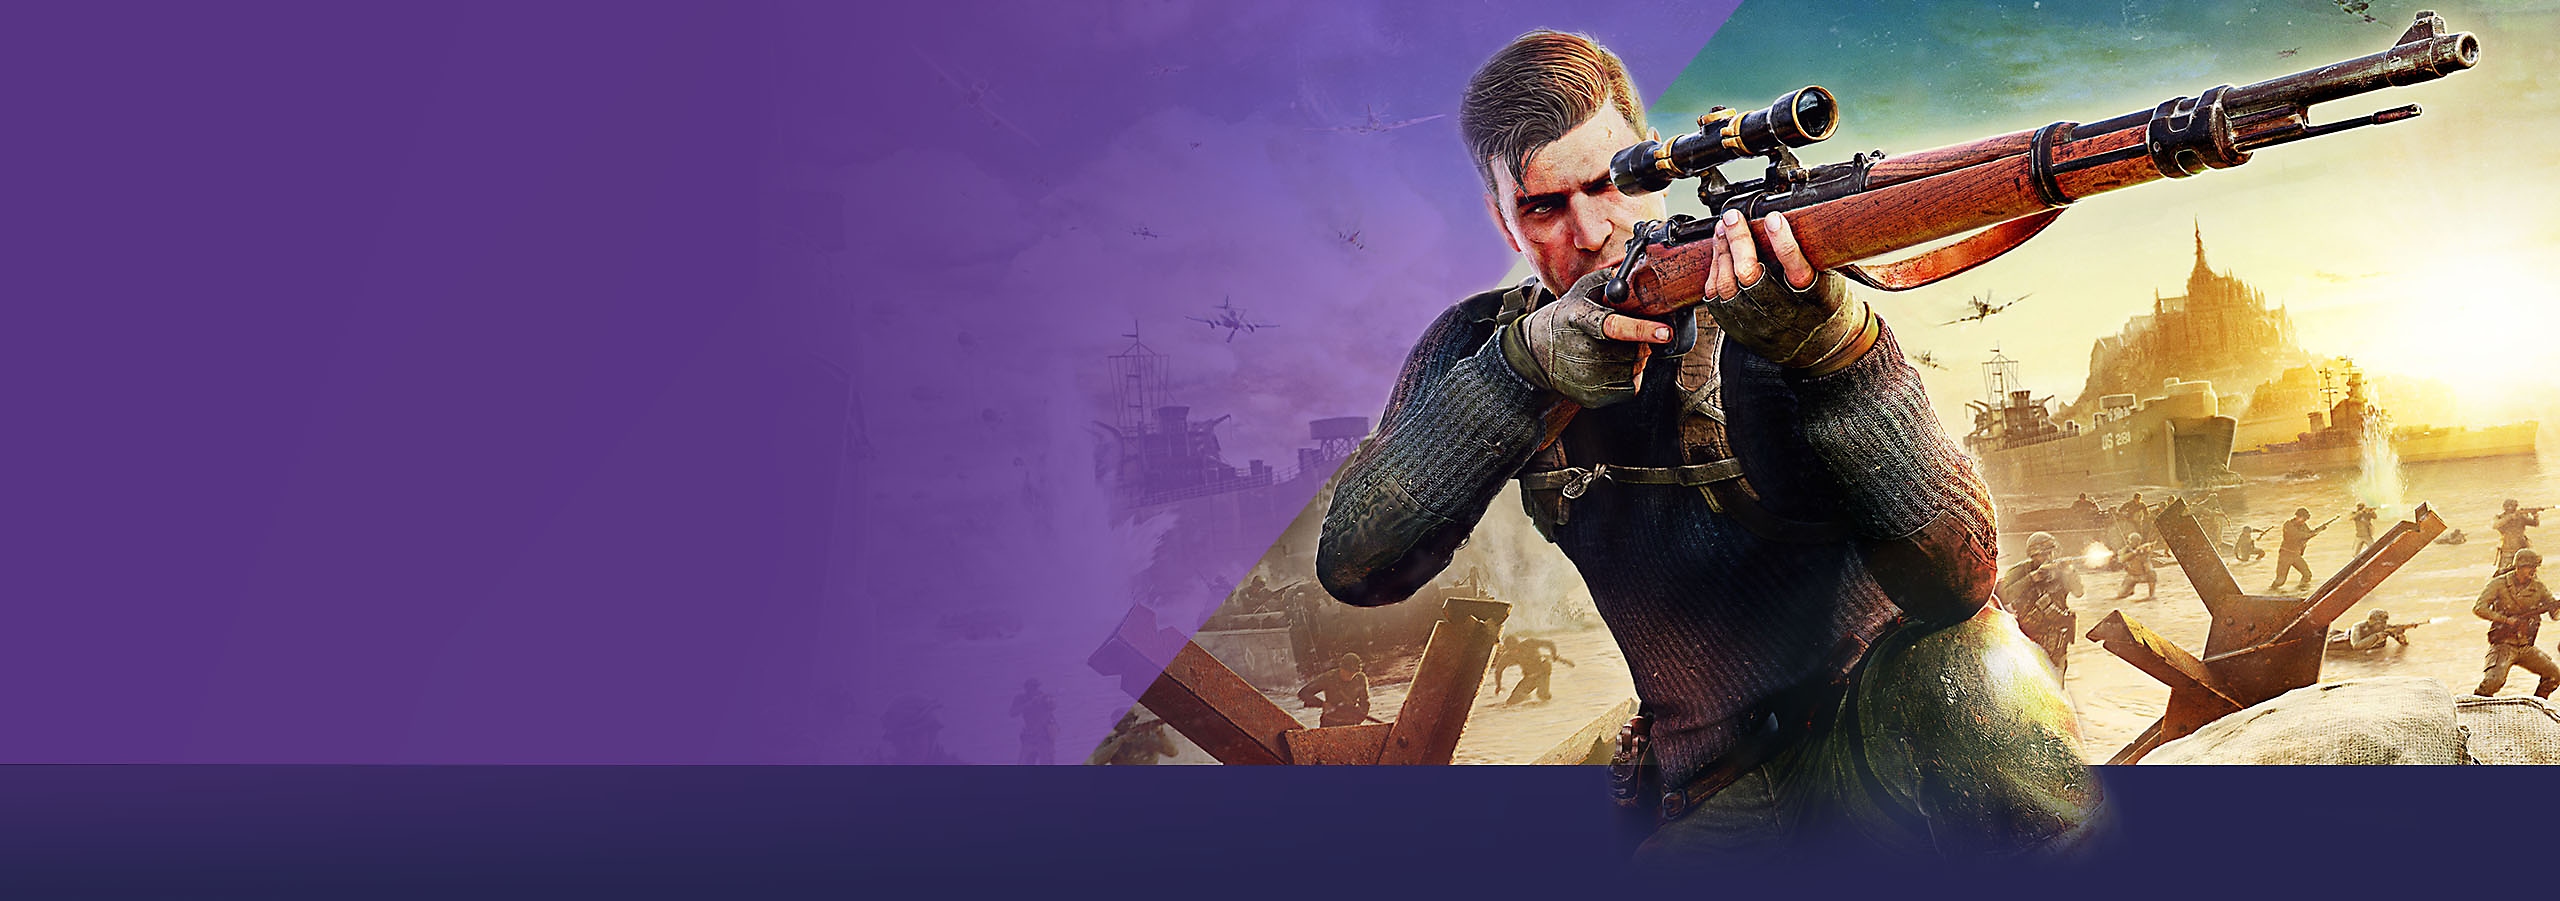 В этом месяце в PlayStation — главное изображение с основным постером игры Sniper Elite 5